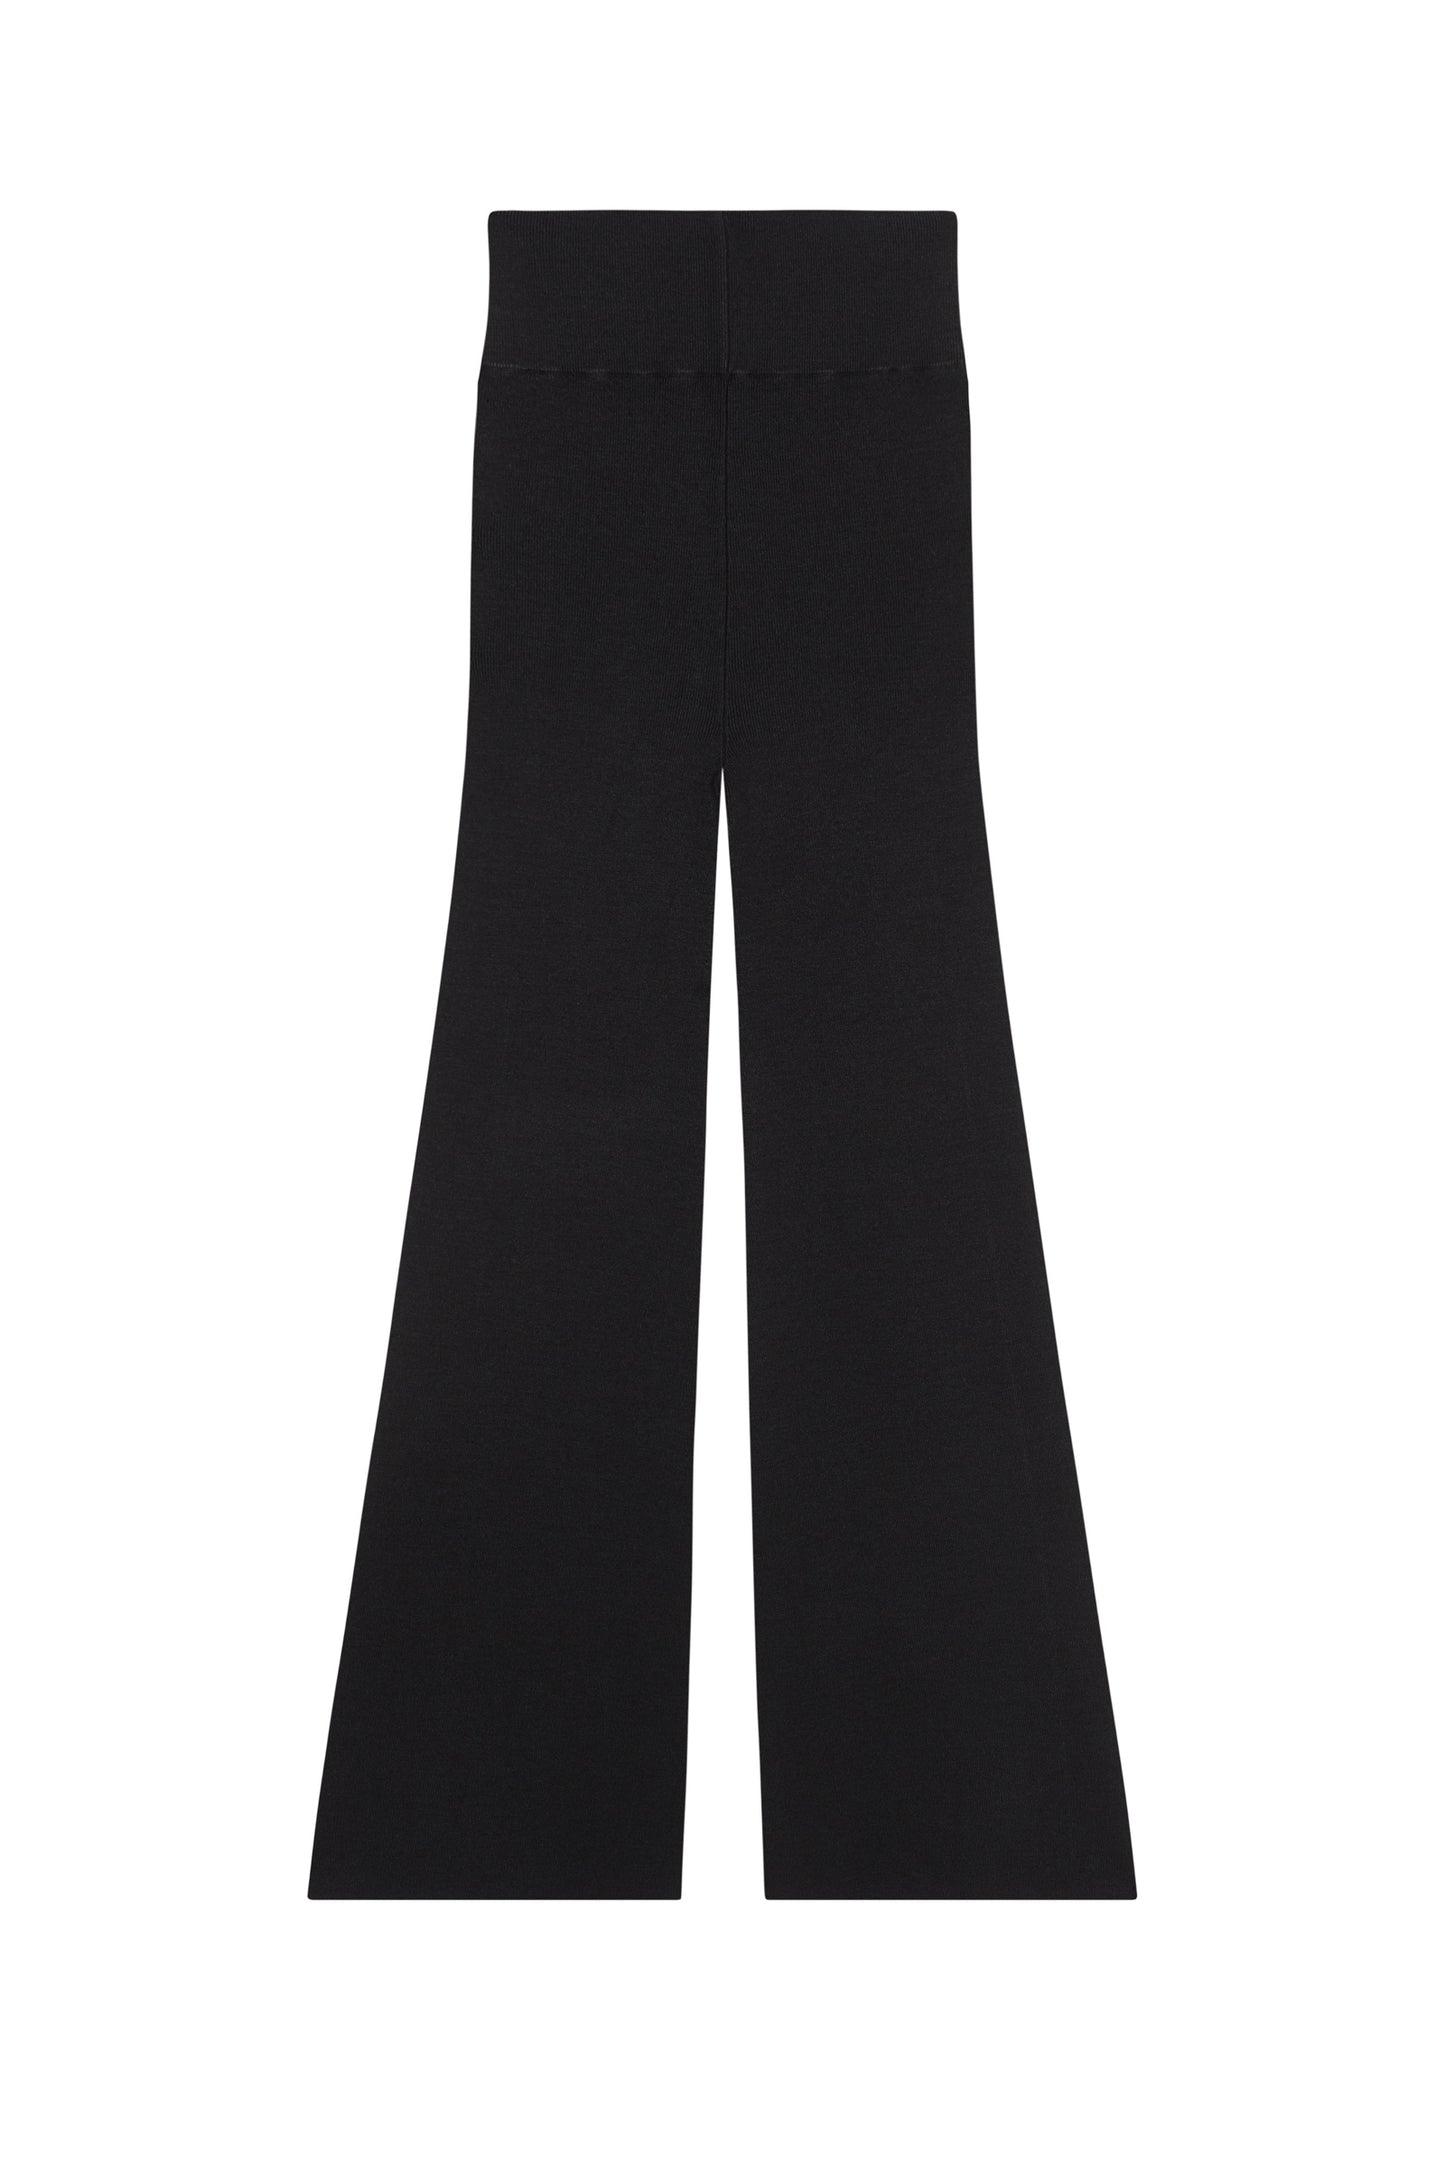 Kiiro, black silk knit pants